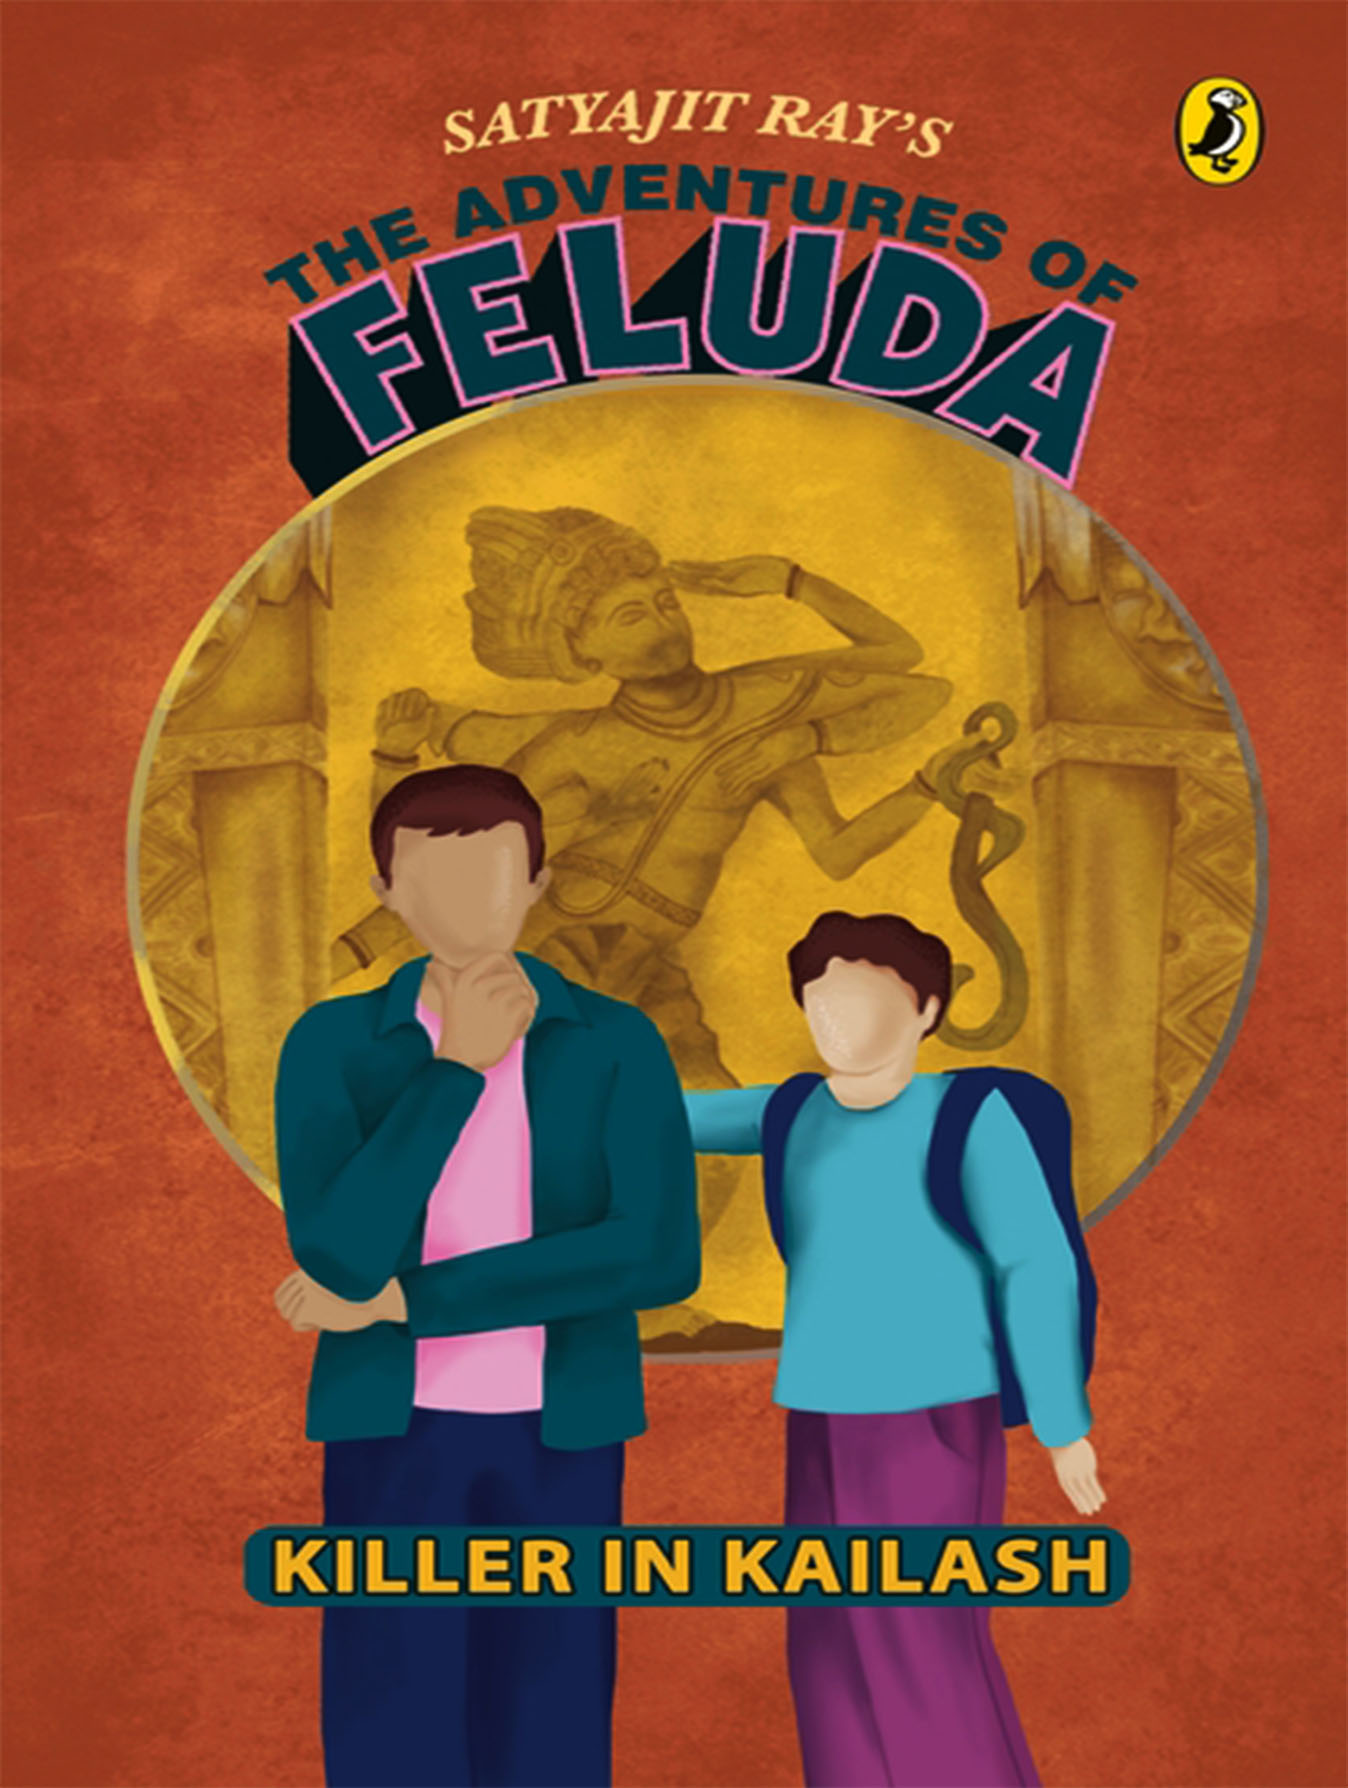 The Adventures of Feluda: A Killer in Kailash (পেপারব্যাক)